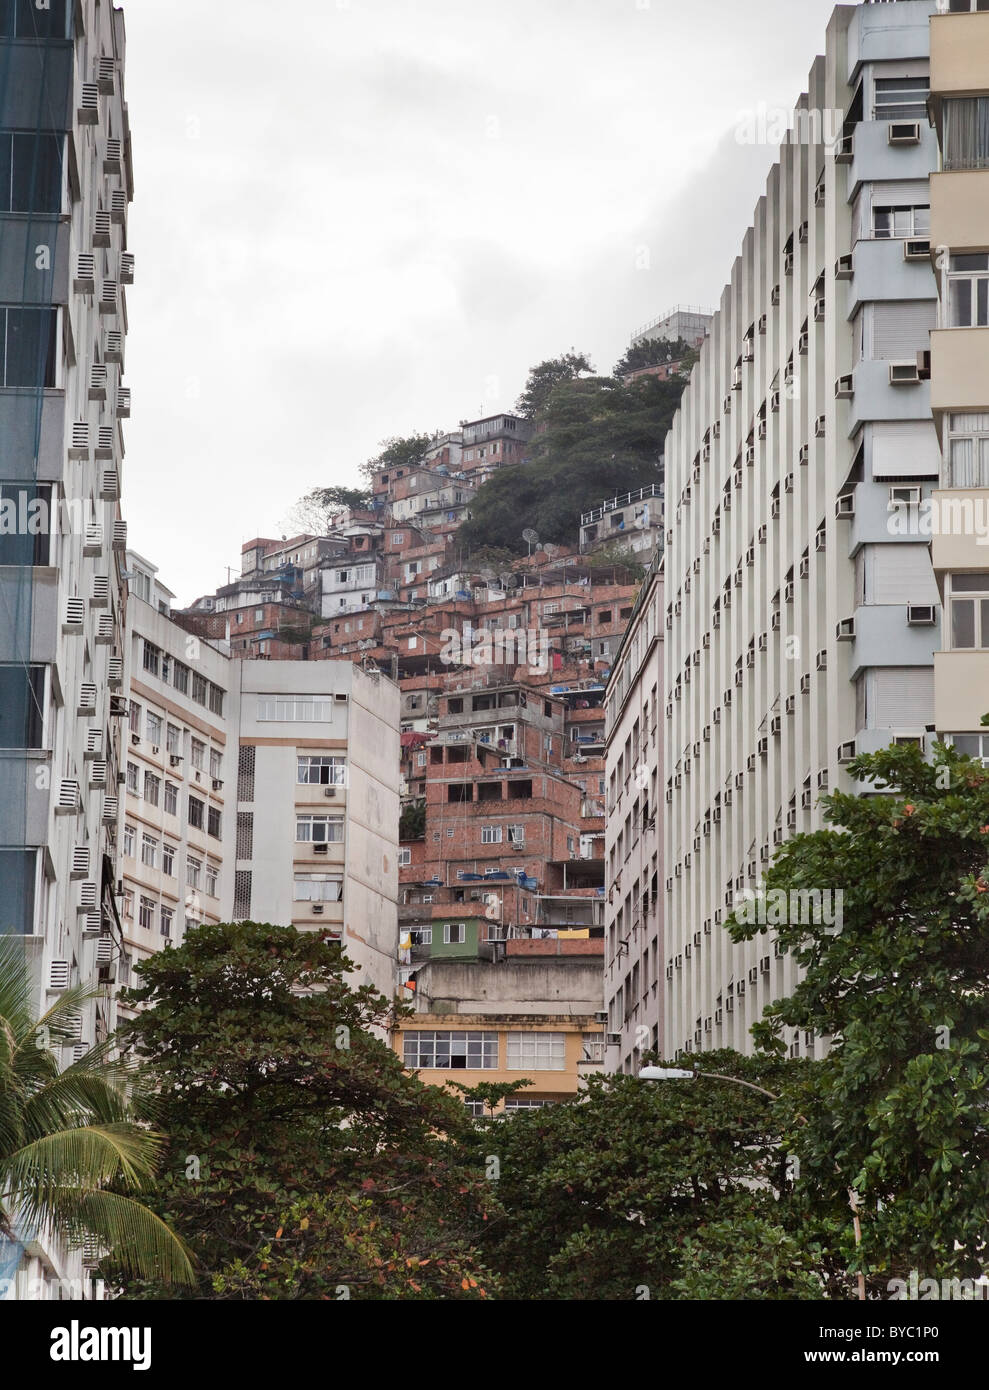 Vista della città di Rio de Janeiro, mostrando Favelas o Bidonville sulla collina in background. Rio de Janeiro, Brasile, Sud America. Foto Stock